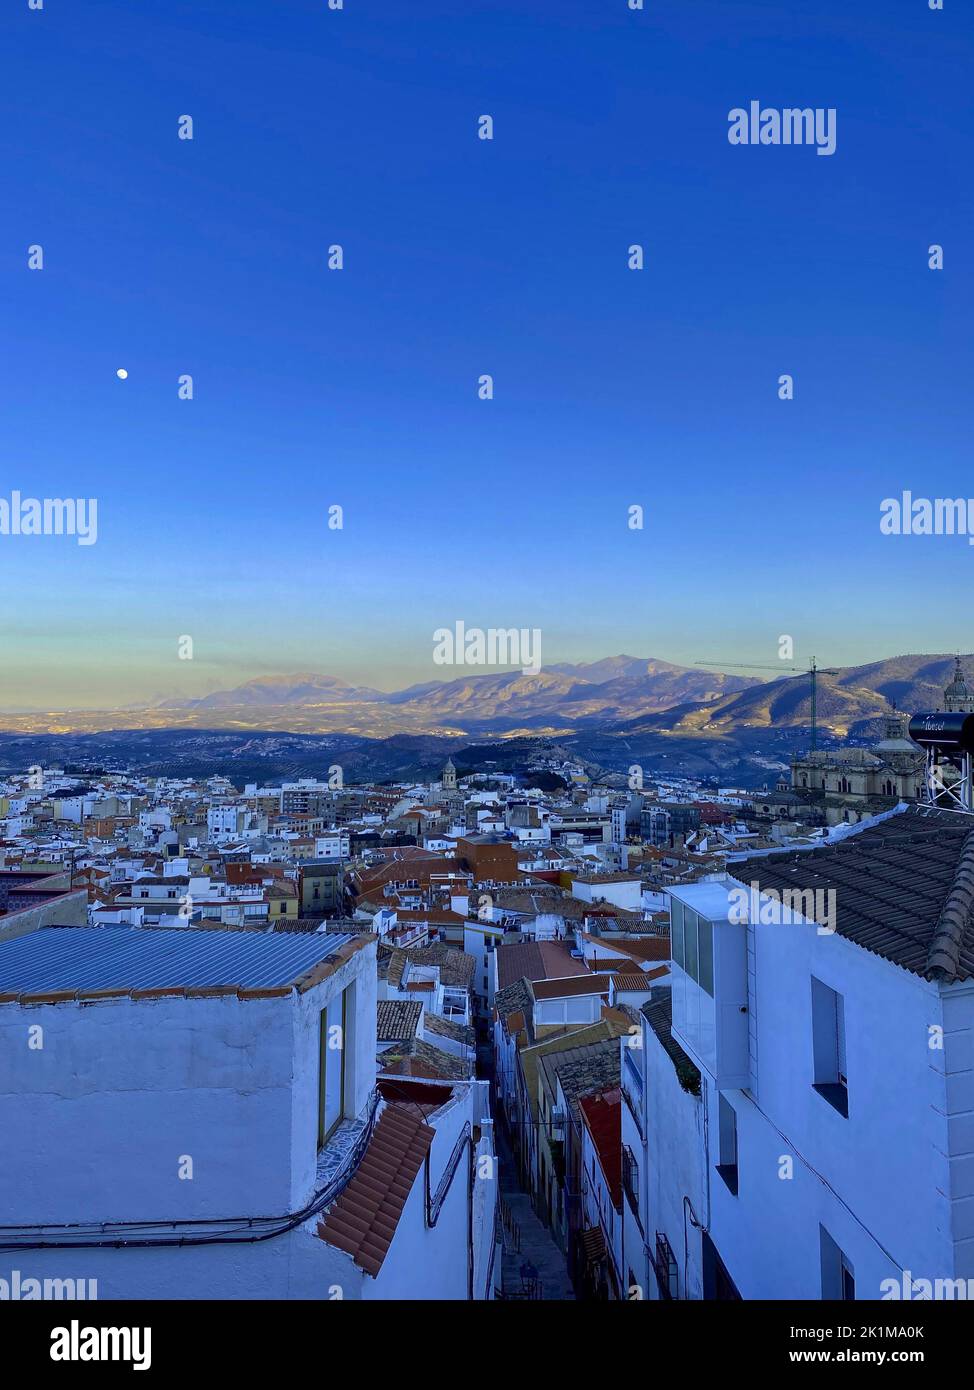 Blick auf die Stadt Jaen, typisches weißes Gebäude, blauer Himmel, Mond und Berge im Hintergrund. Hochwertige Fotos Stockfoto